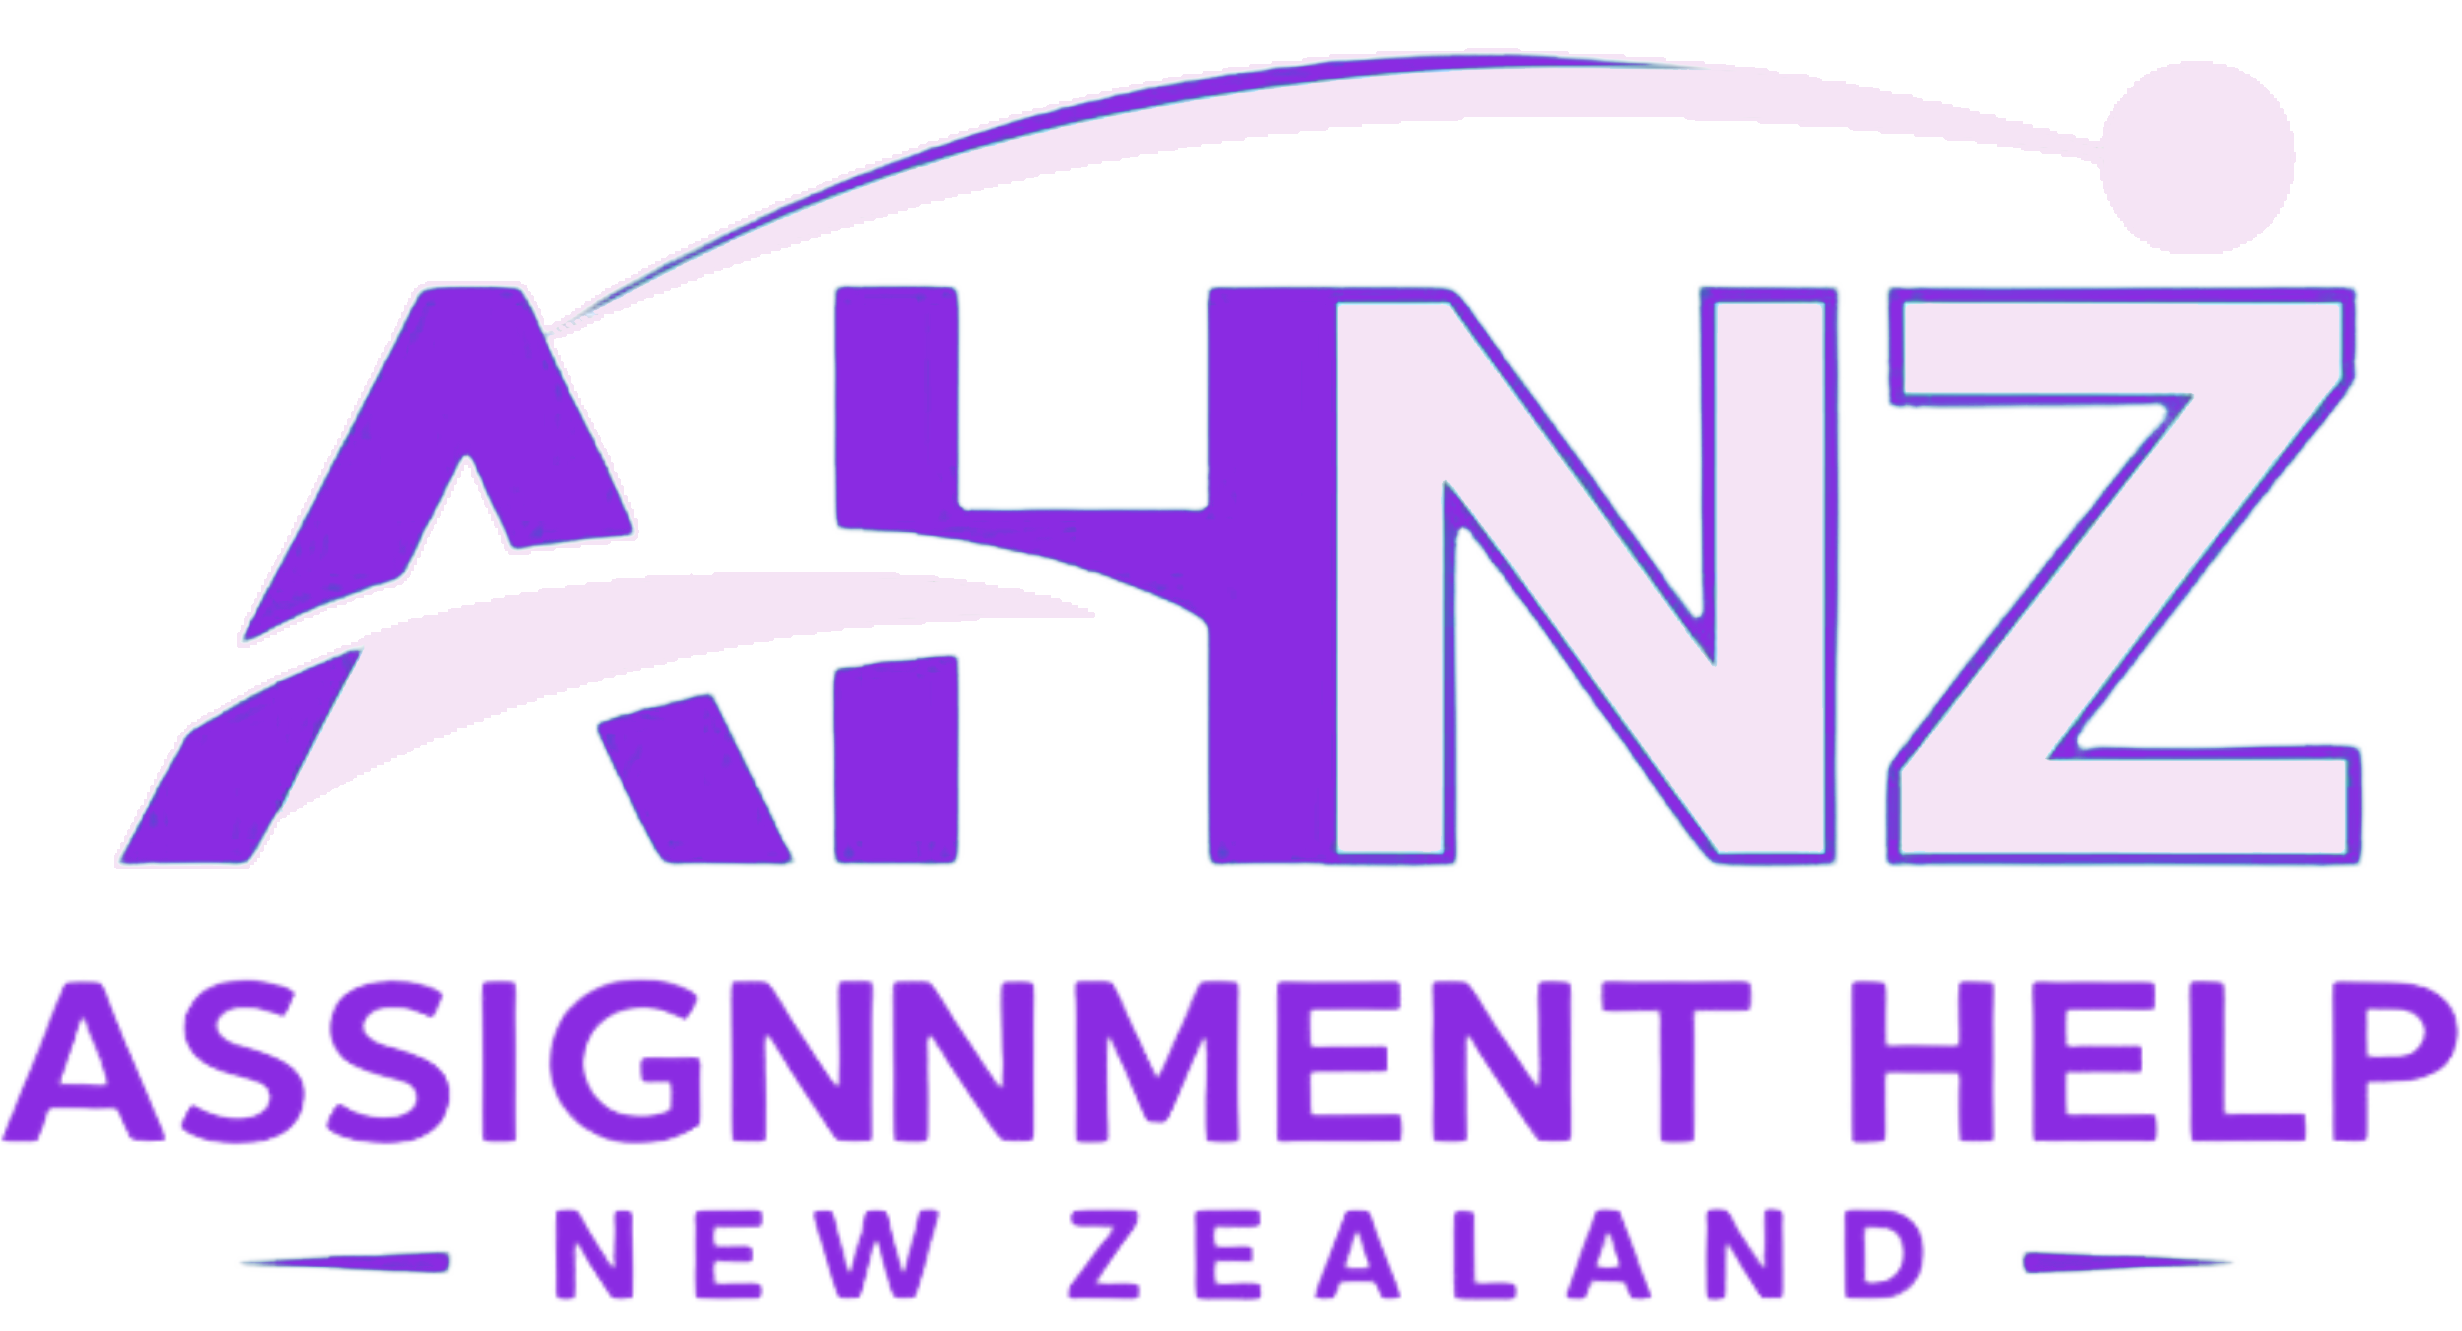 Assignment Help New Zealand